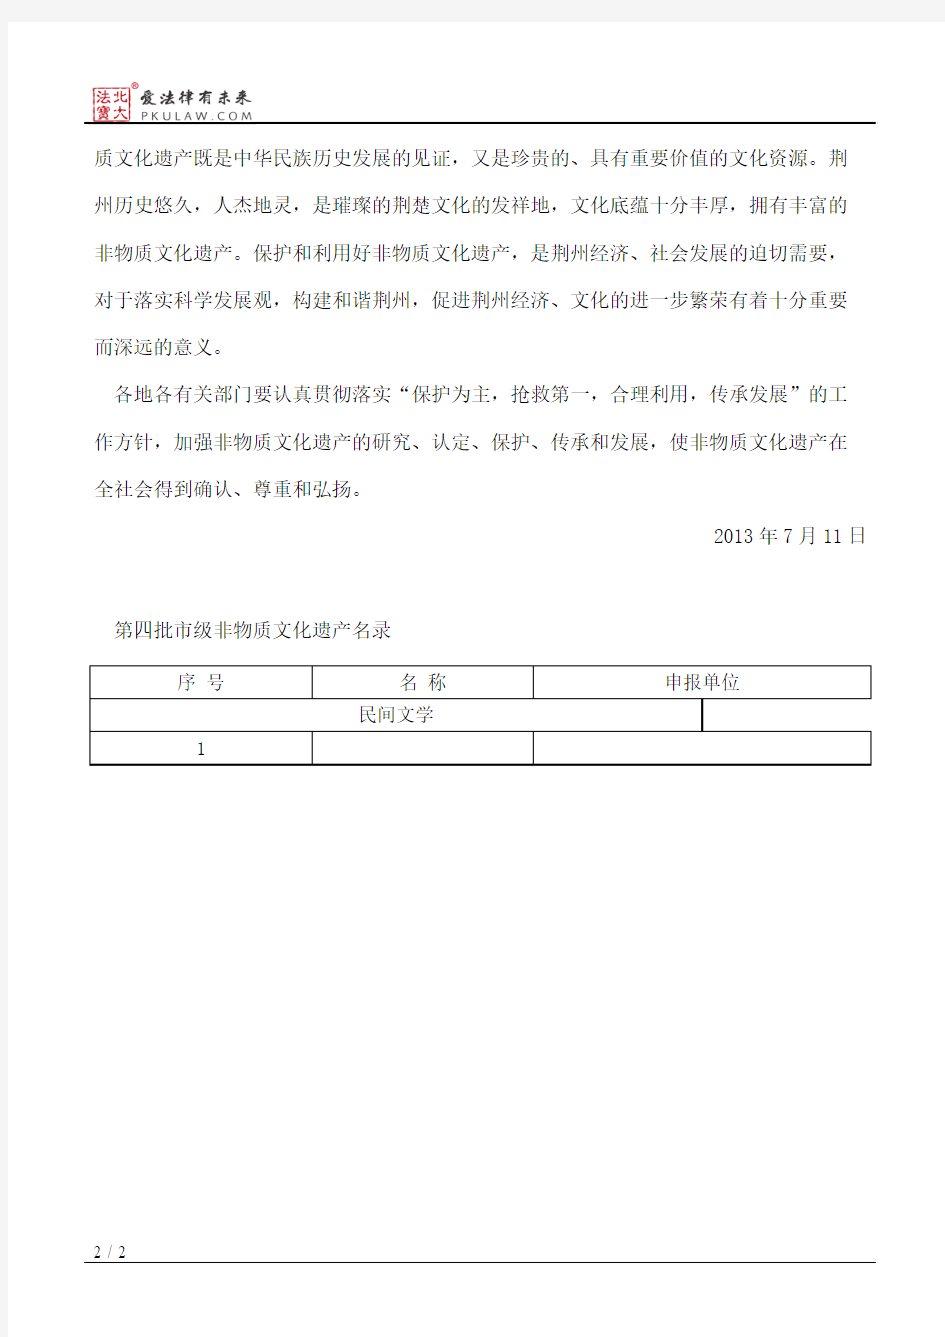 荆州市人民政府关于公布第四批市级非物质文化遗产名录和第一批市